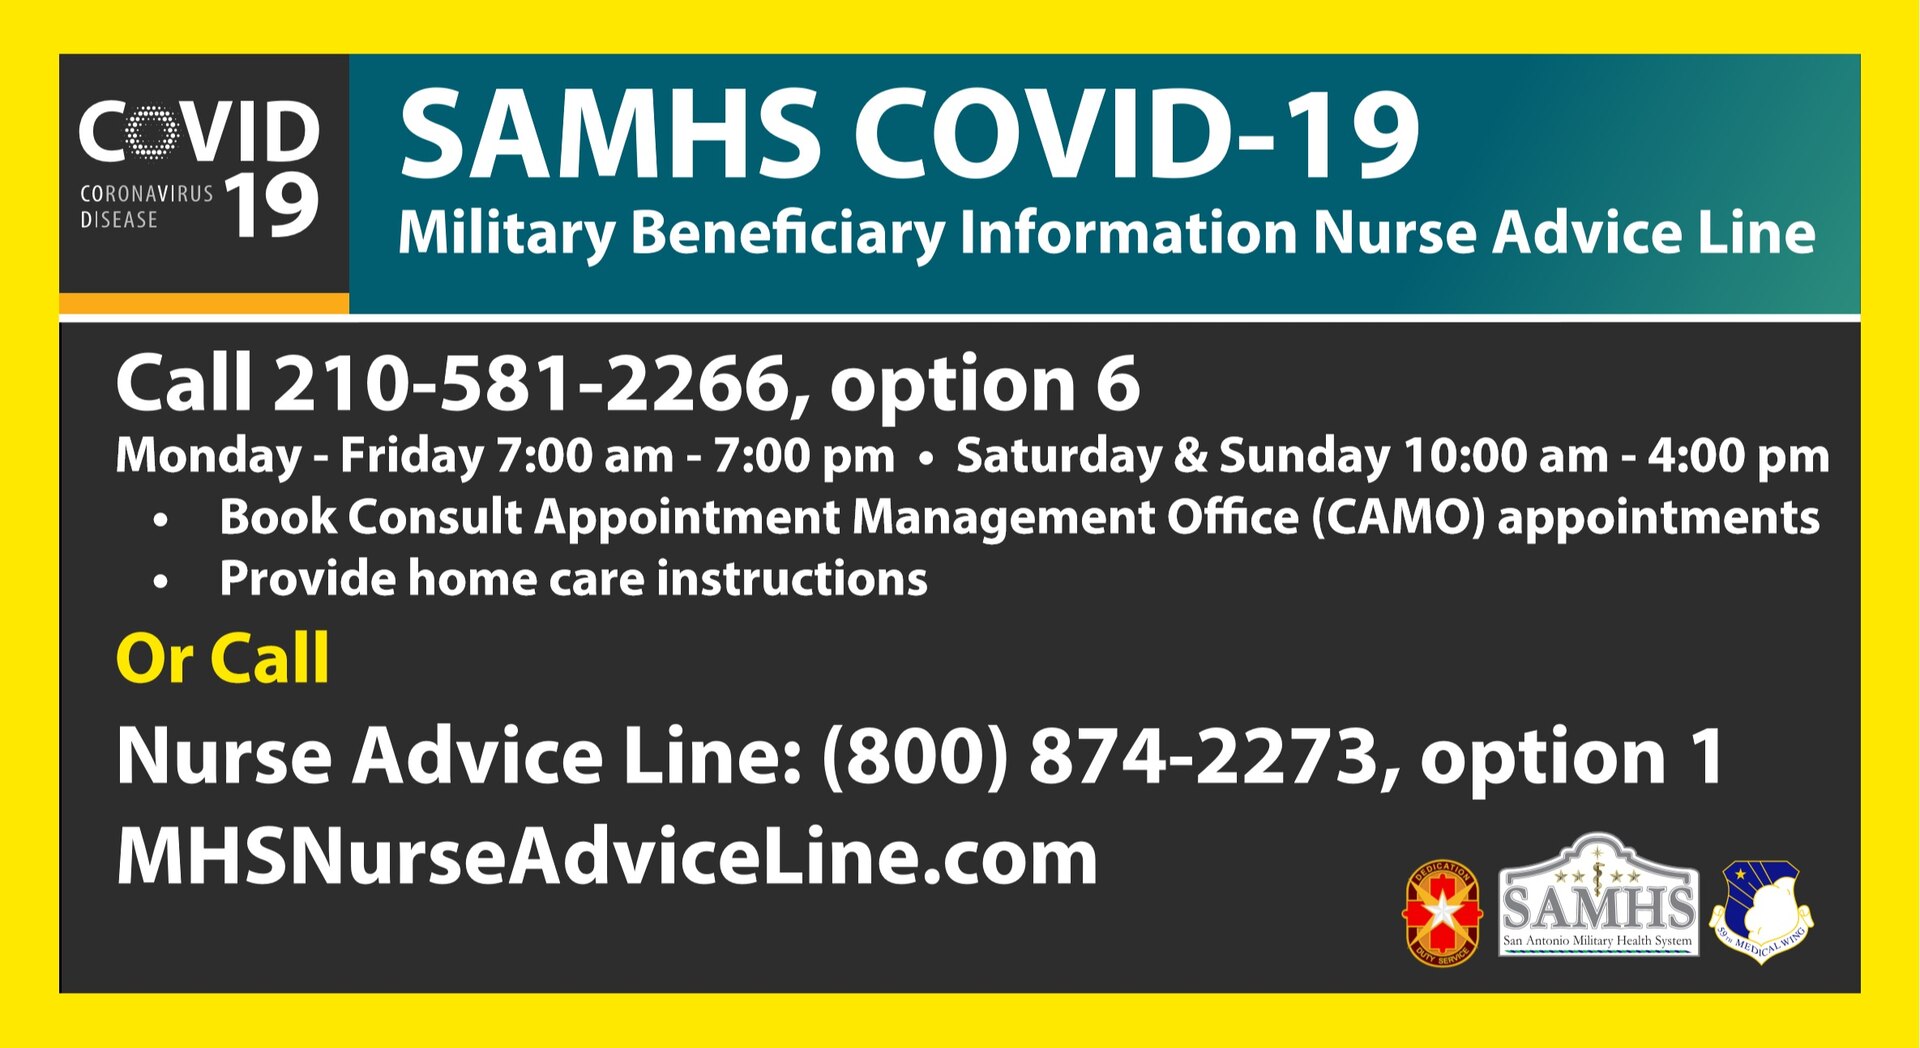 SAMHS COVID-19 Advice Line